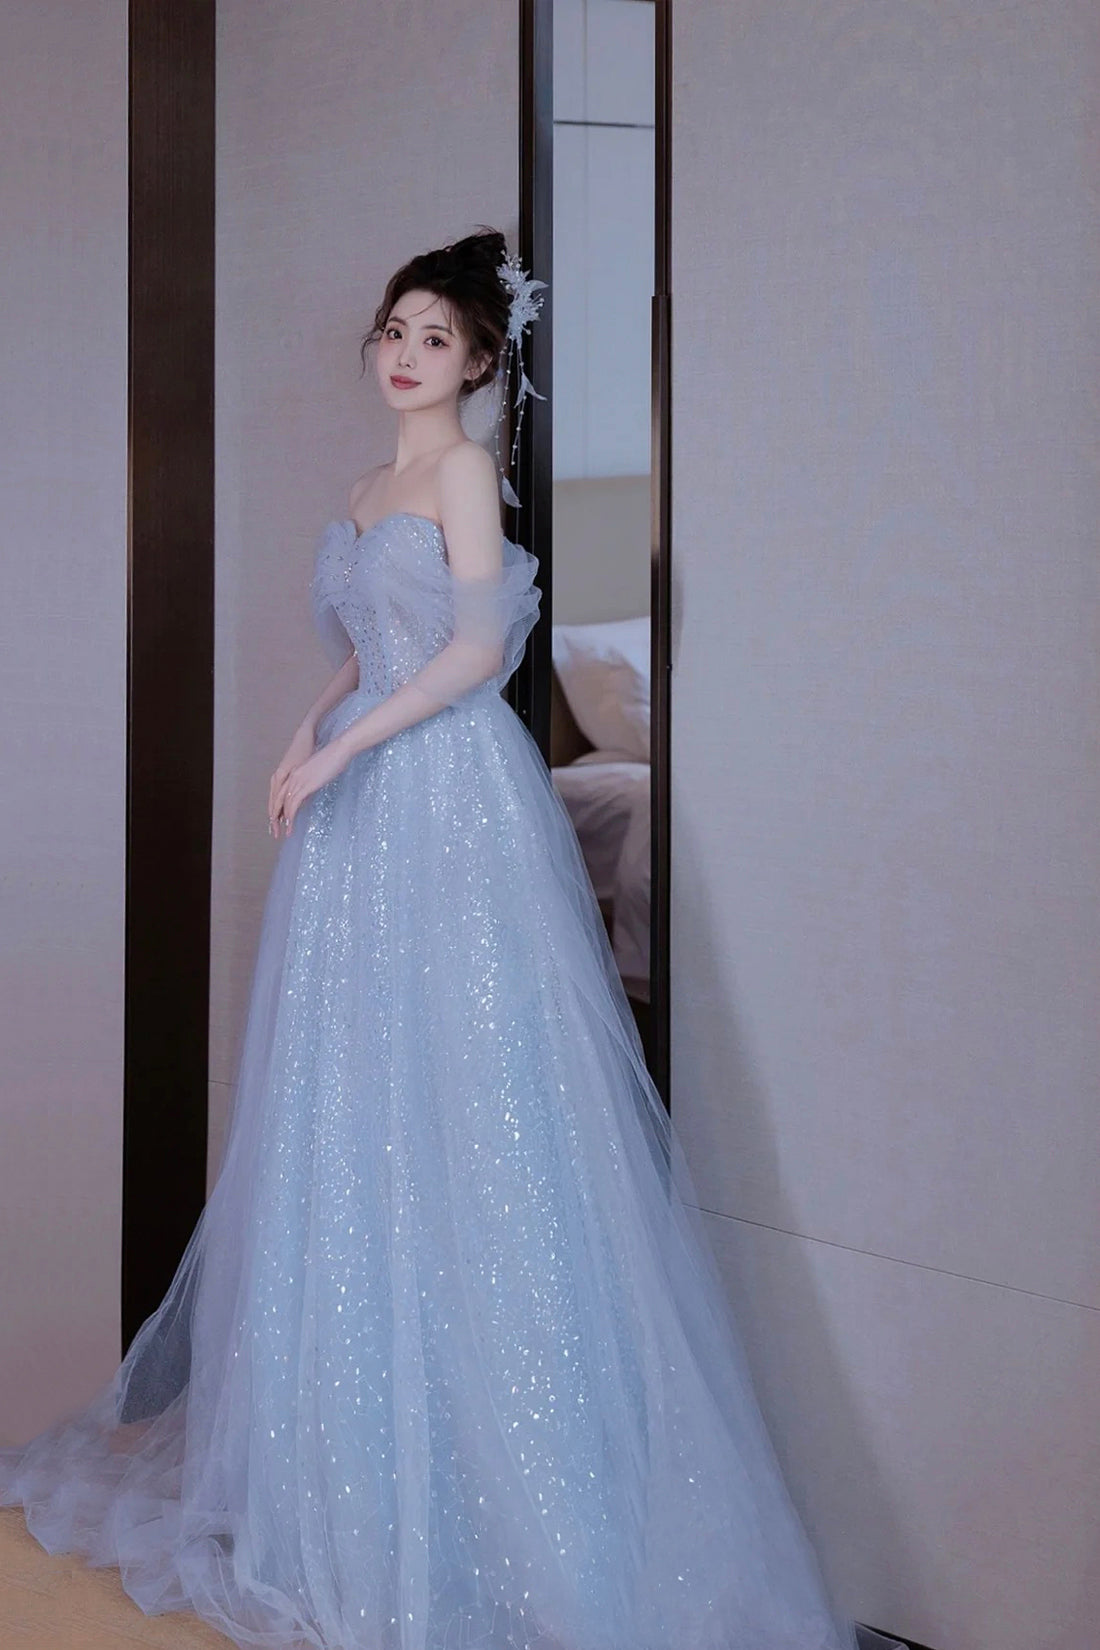 Light Blue Tulle Off Shoulder Party Dress, A-Line Sequins Blue Formal Dress Prom Dress